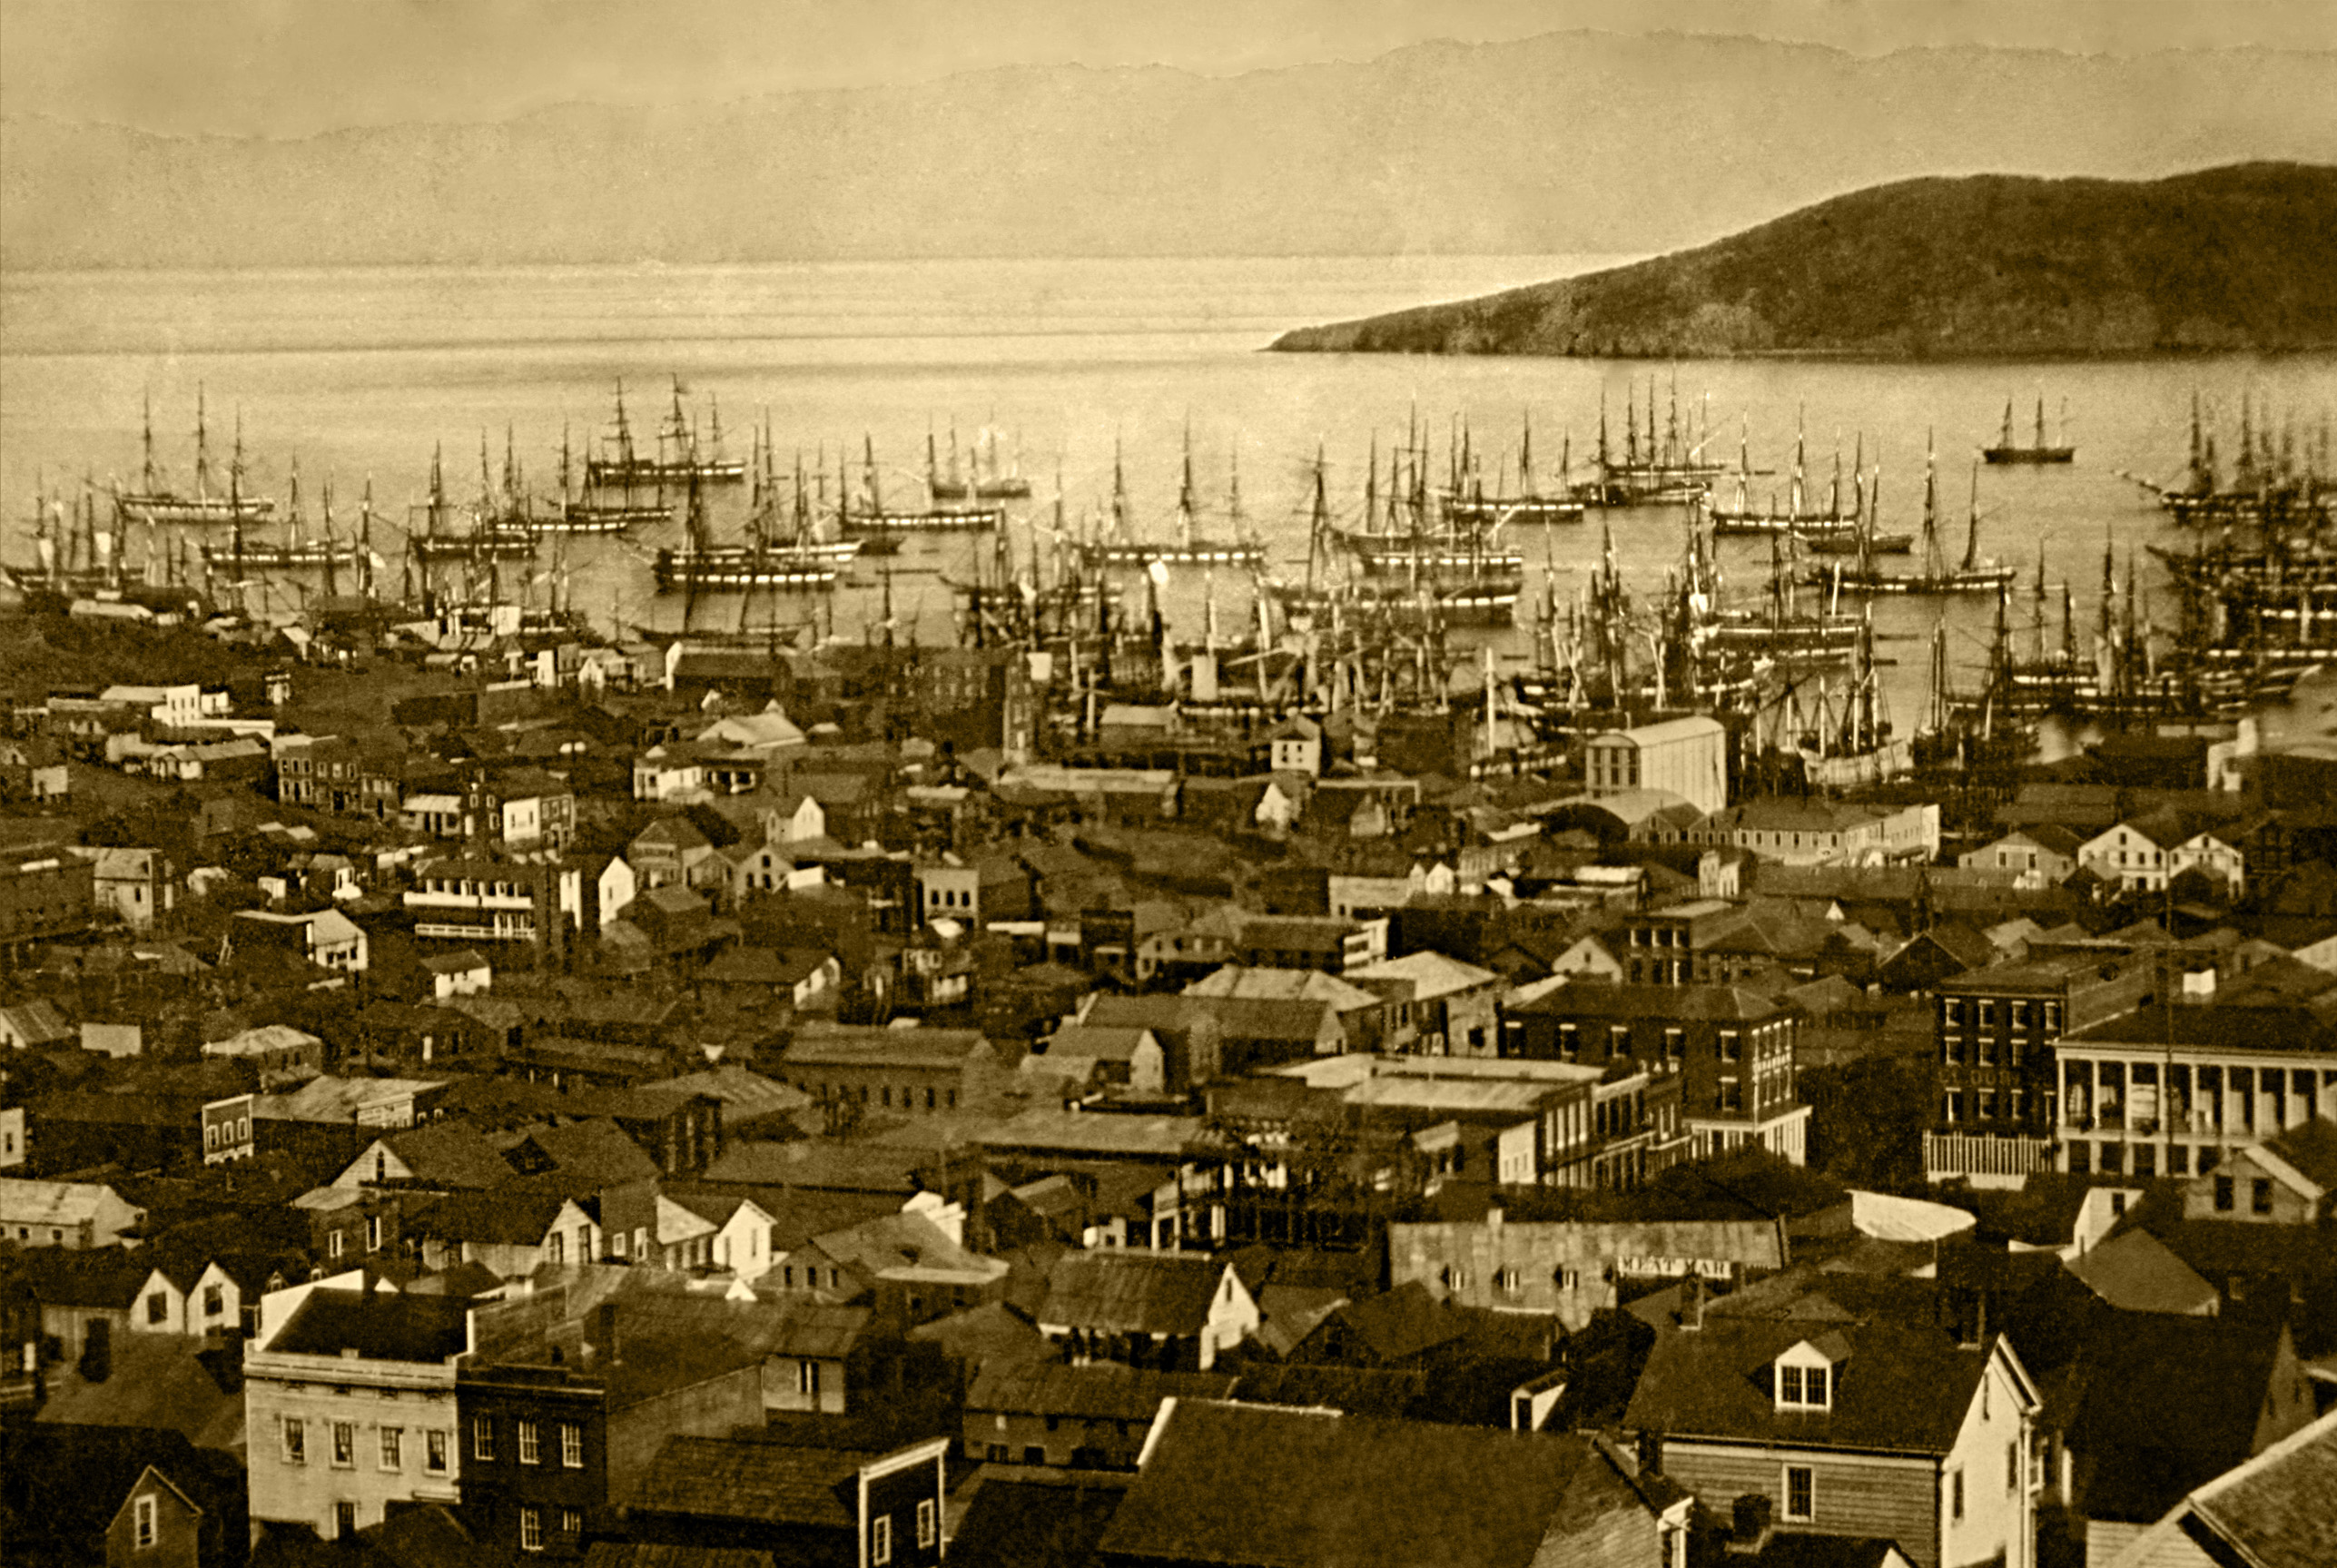 San Fran Harbor in the 1840s